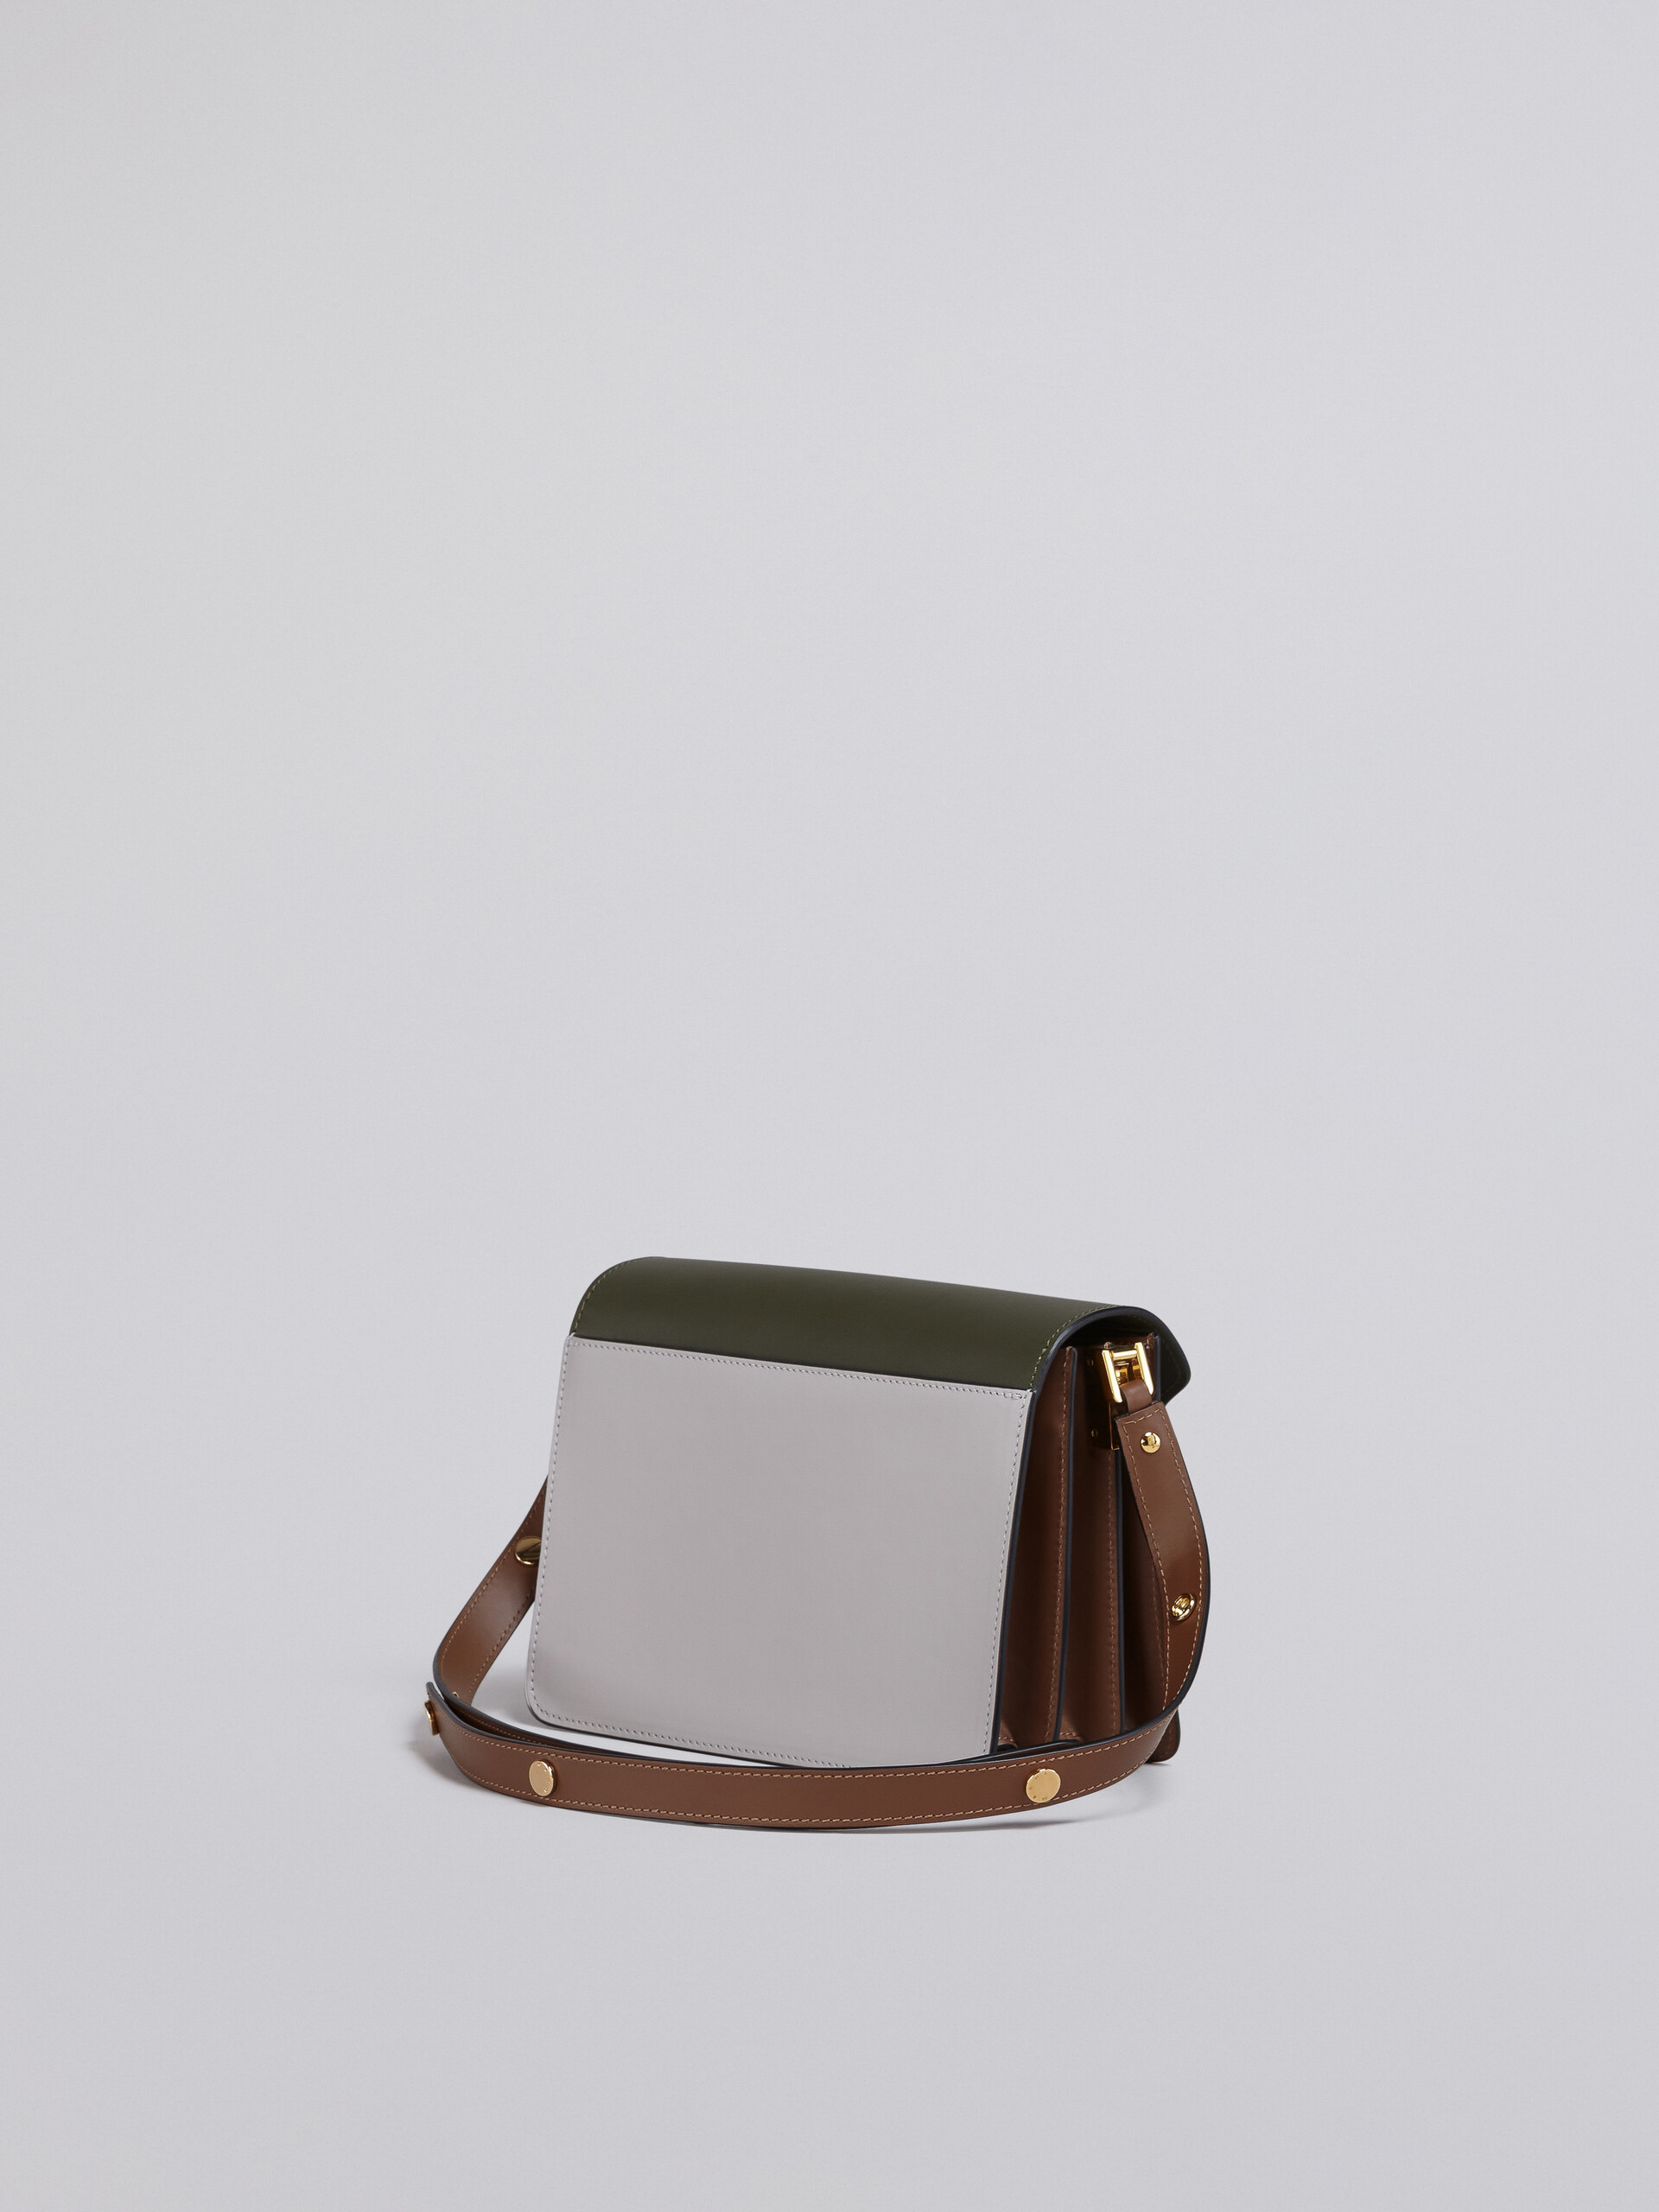 TRUNK bag media in pelle verde grigia e marrone - Borse a spalla - Image 2